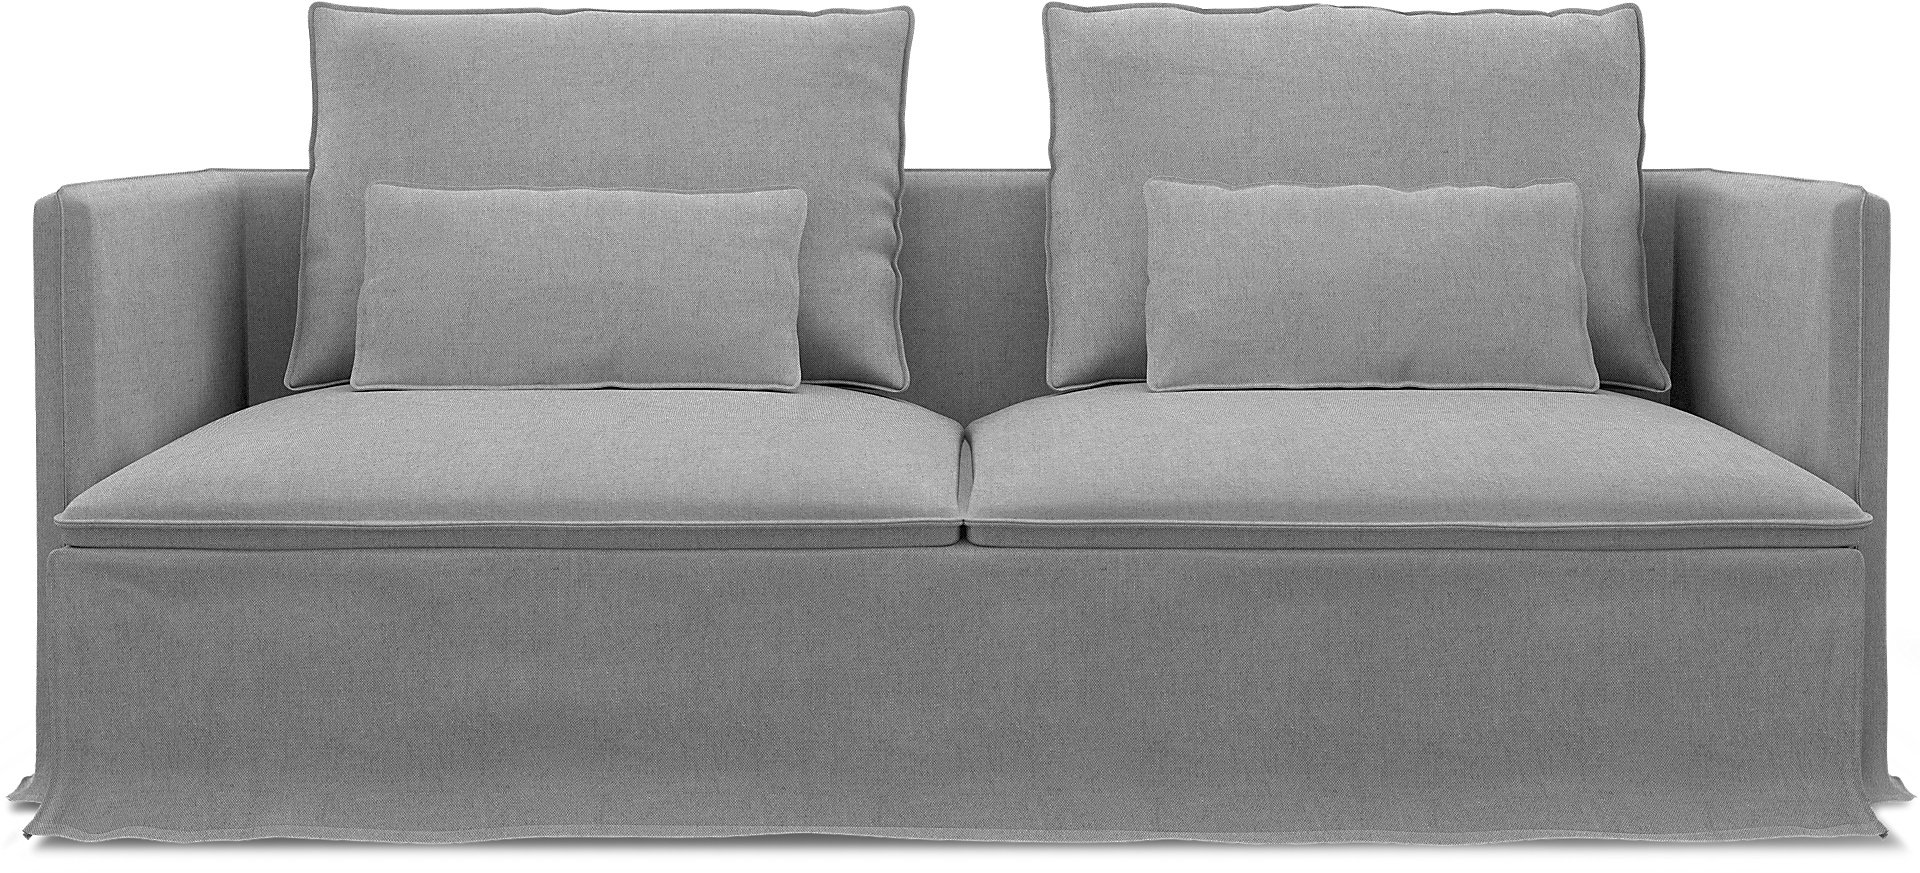 IKEA - Soderhamn 3 Seater Sofa Cover, Graphite, Linen - Bemz